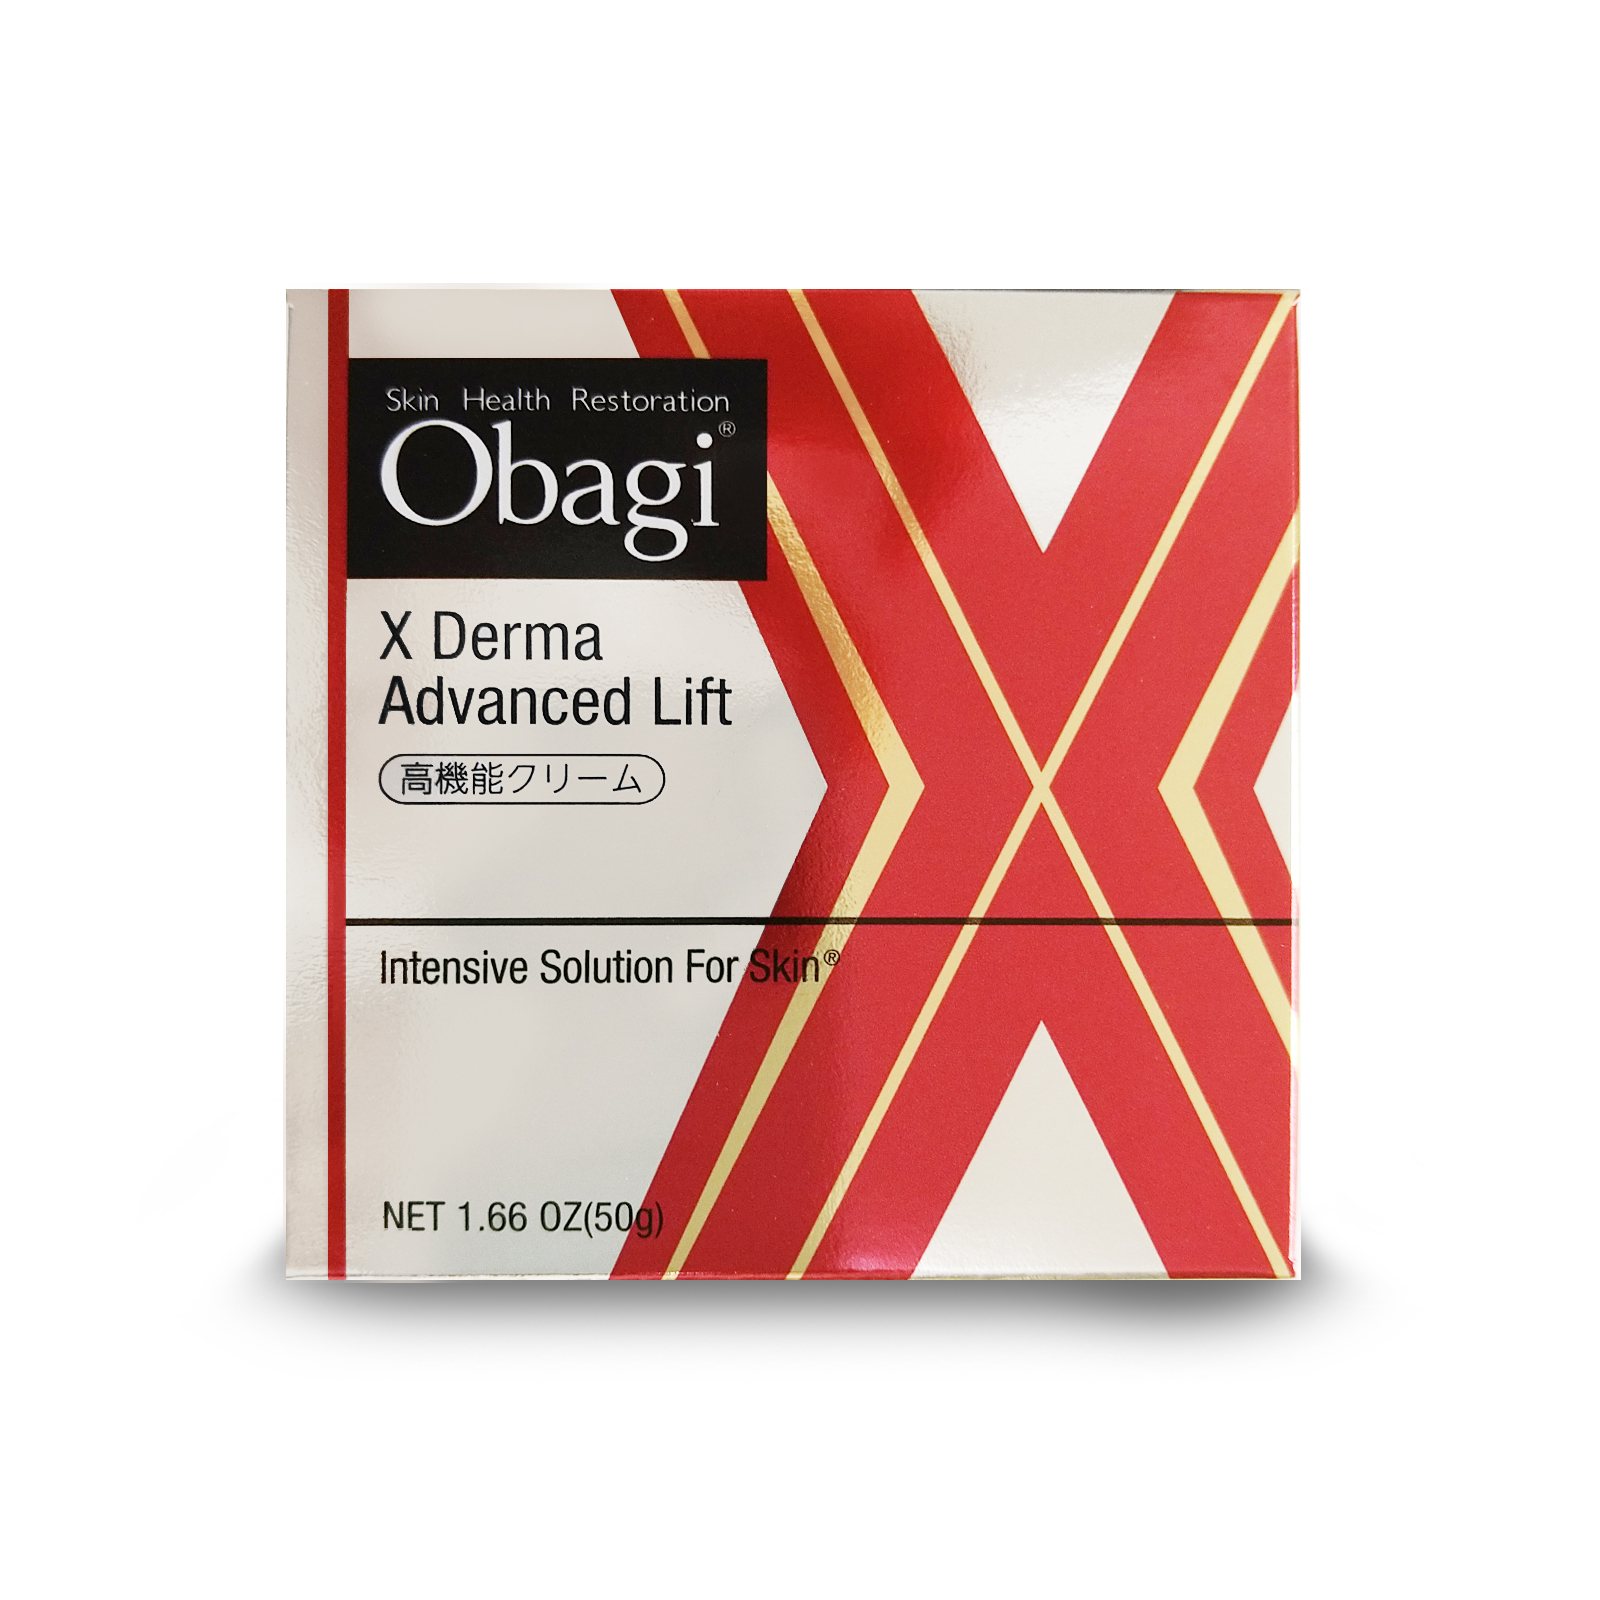 ロート製薬 Obagi(オバジ) オバジX ダーマアドバンスドリフト 50g